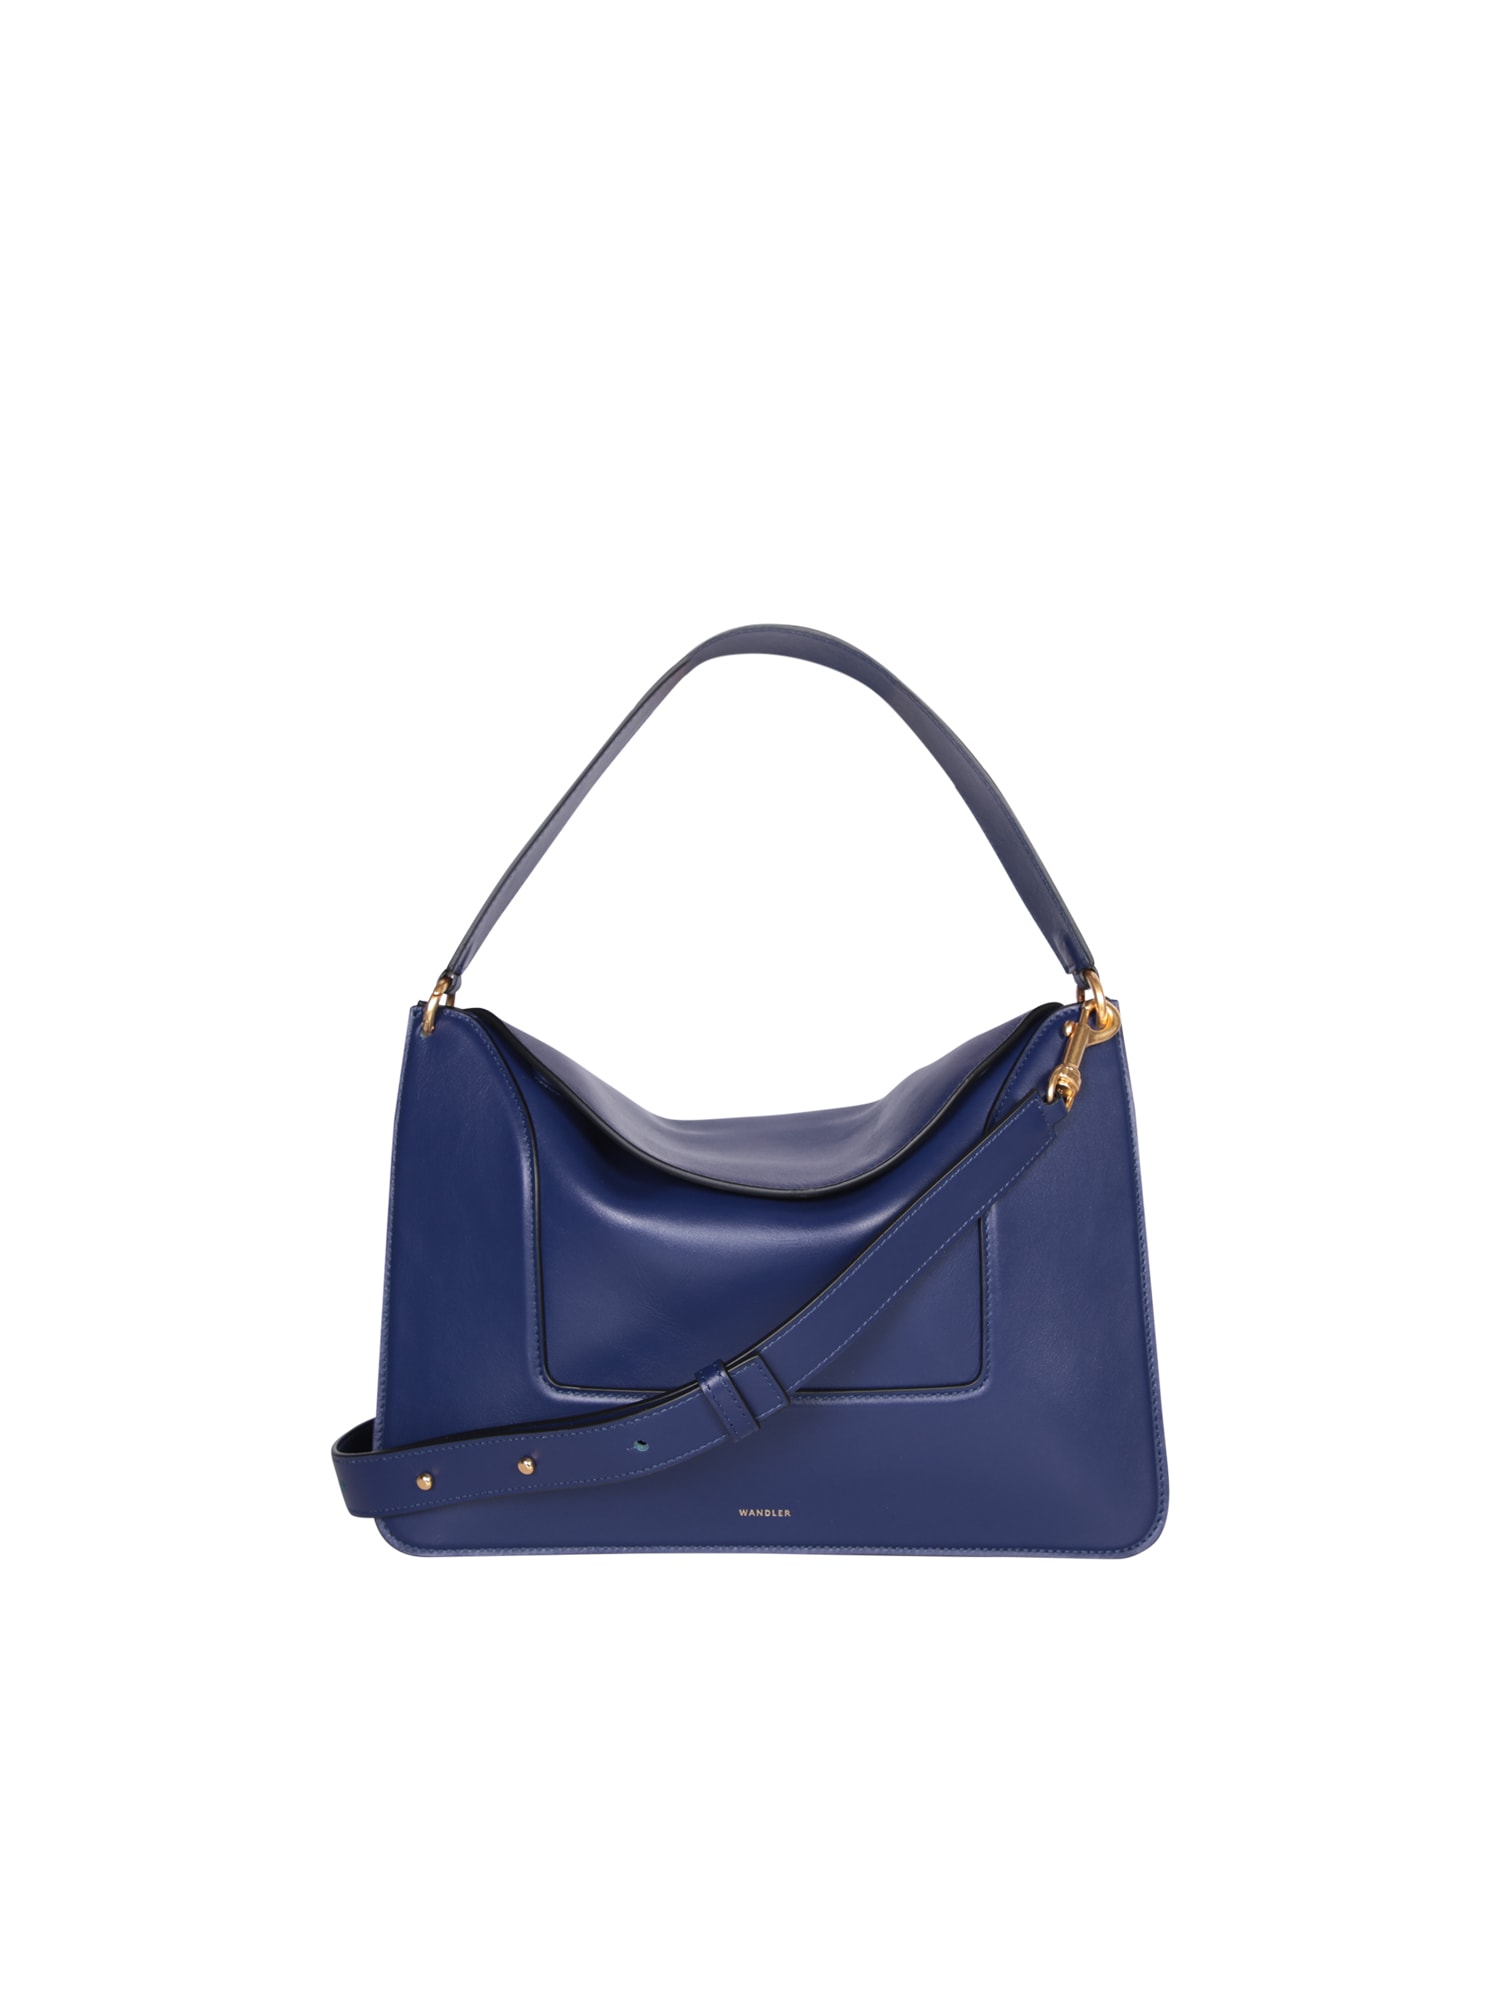 Penelope Bin Blue Bag